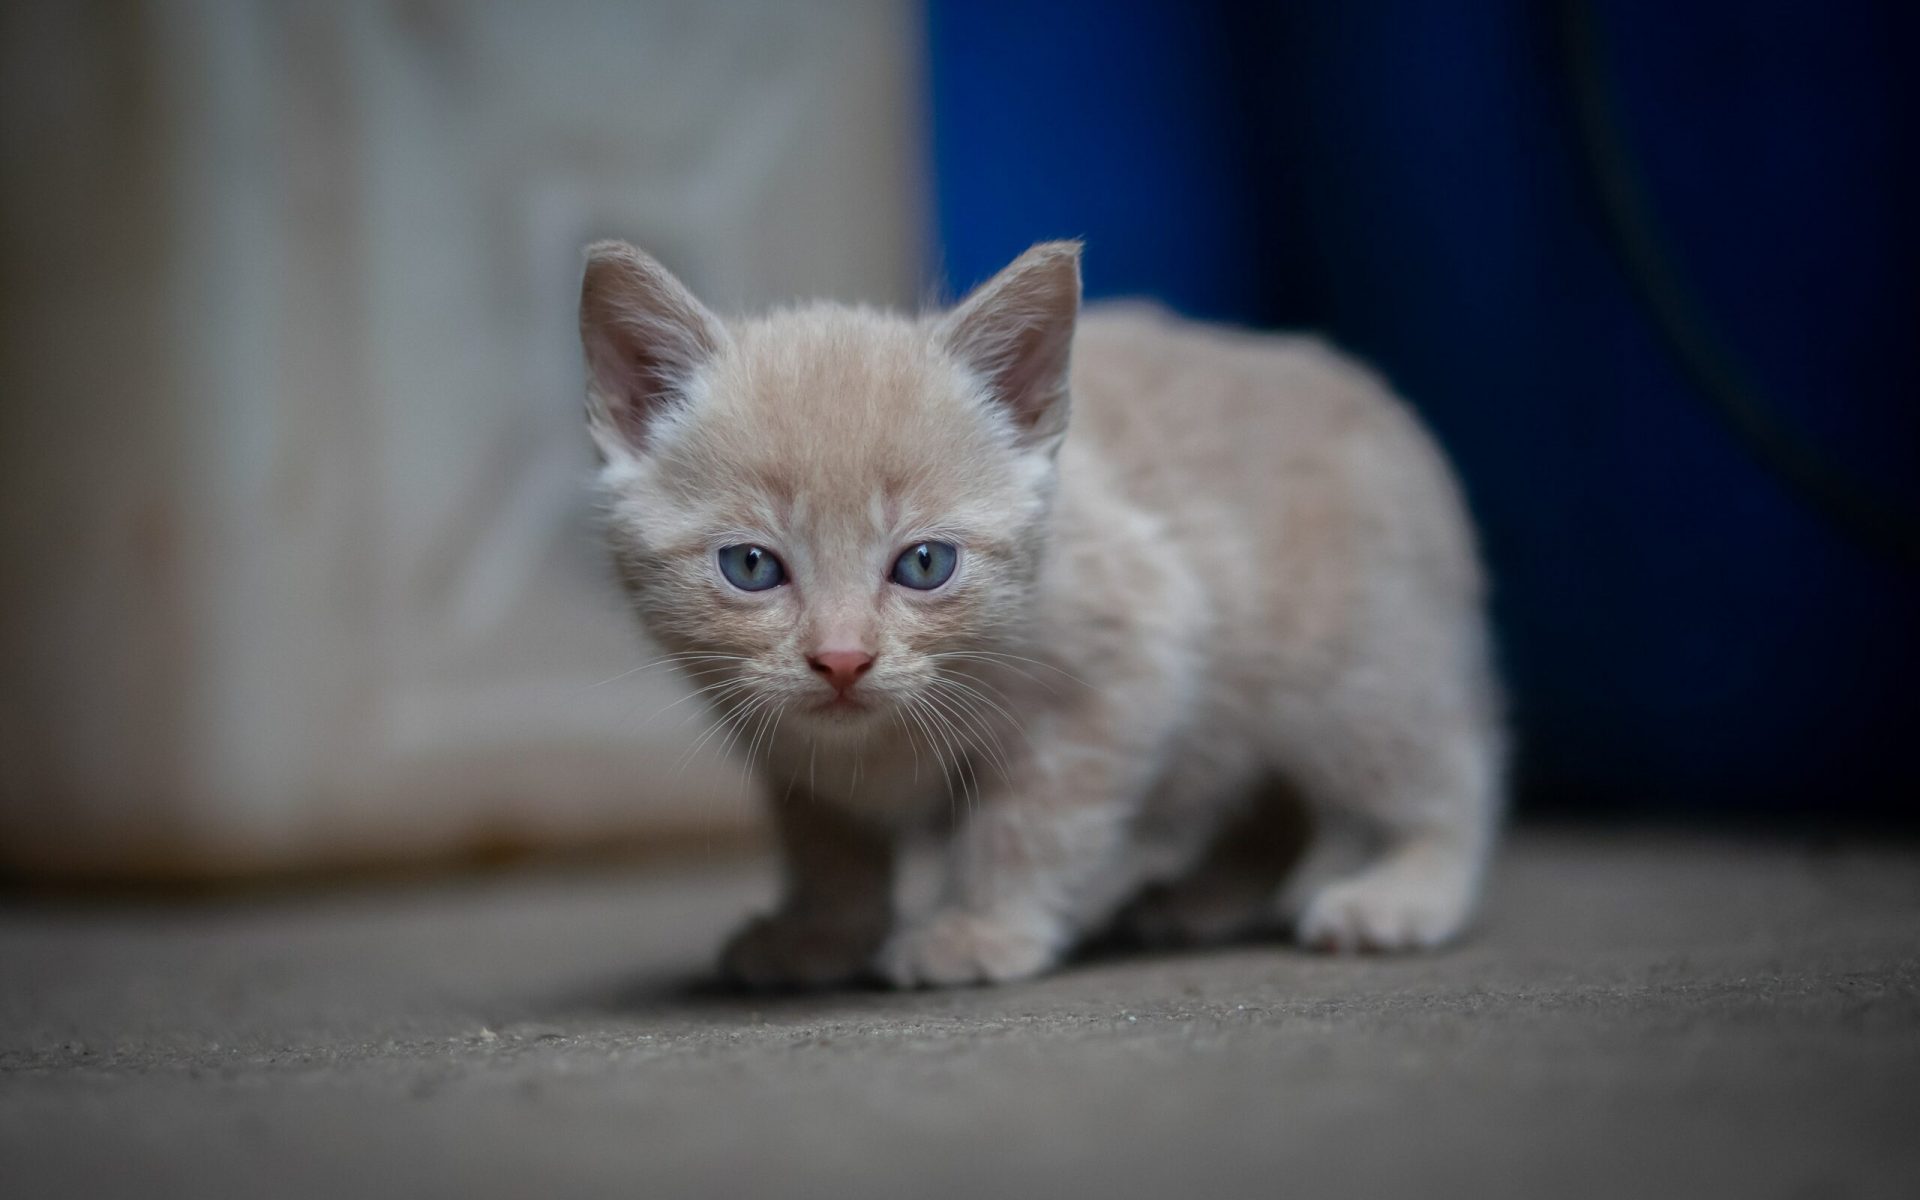 orange tabby kitten on white surface